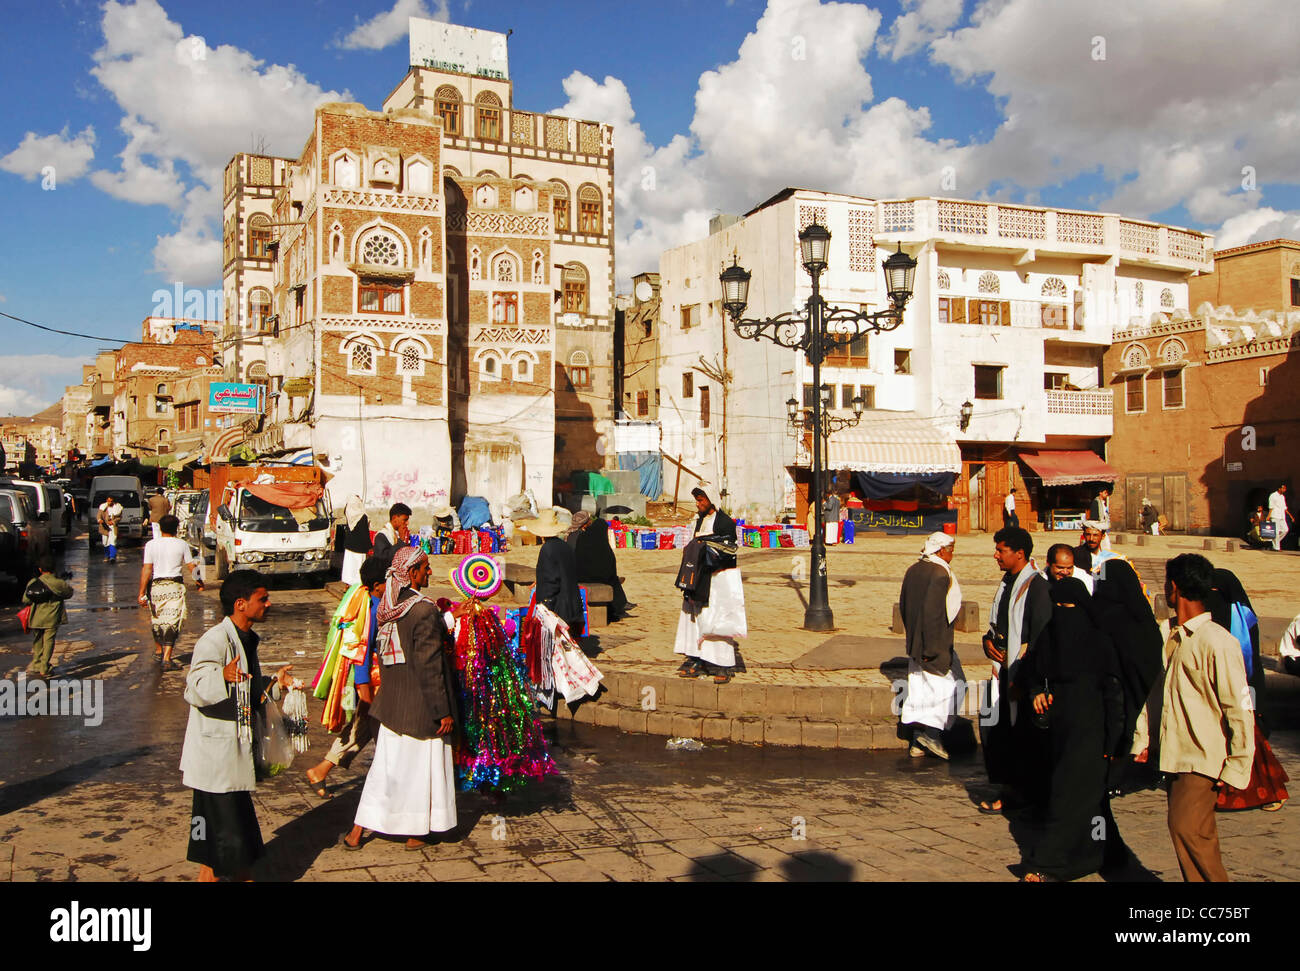 Yémen, Sanaa, busy market street avec hawker holding articles pour la vente, groupe de personnes marchant sur la rue Banque D'Images